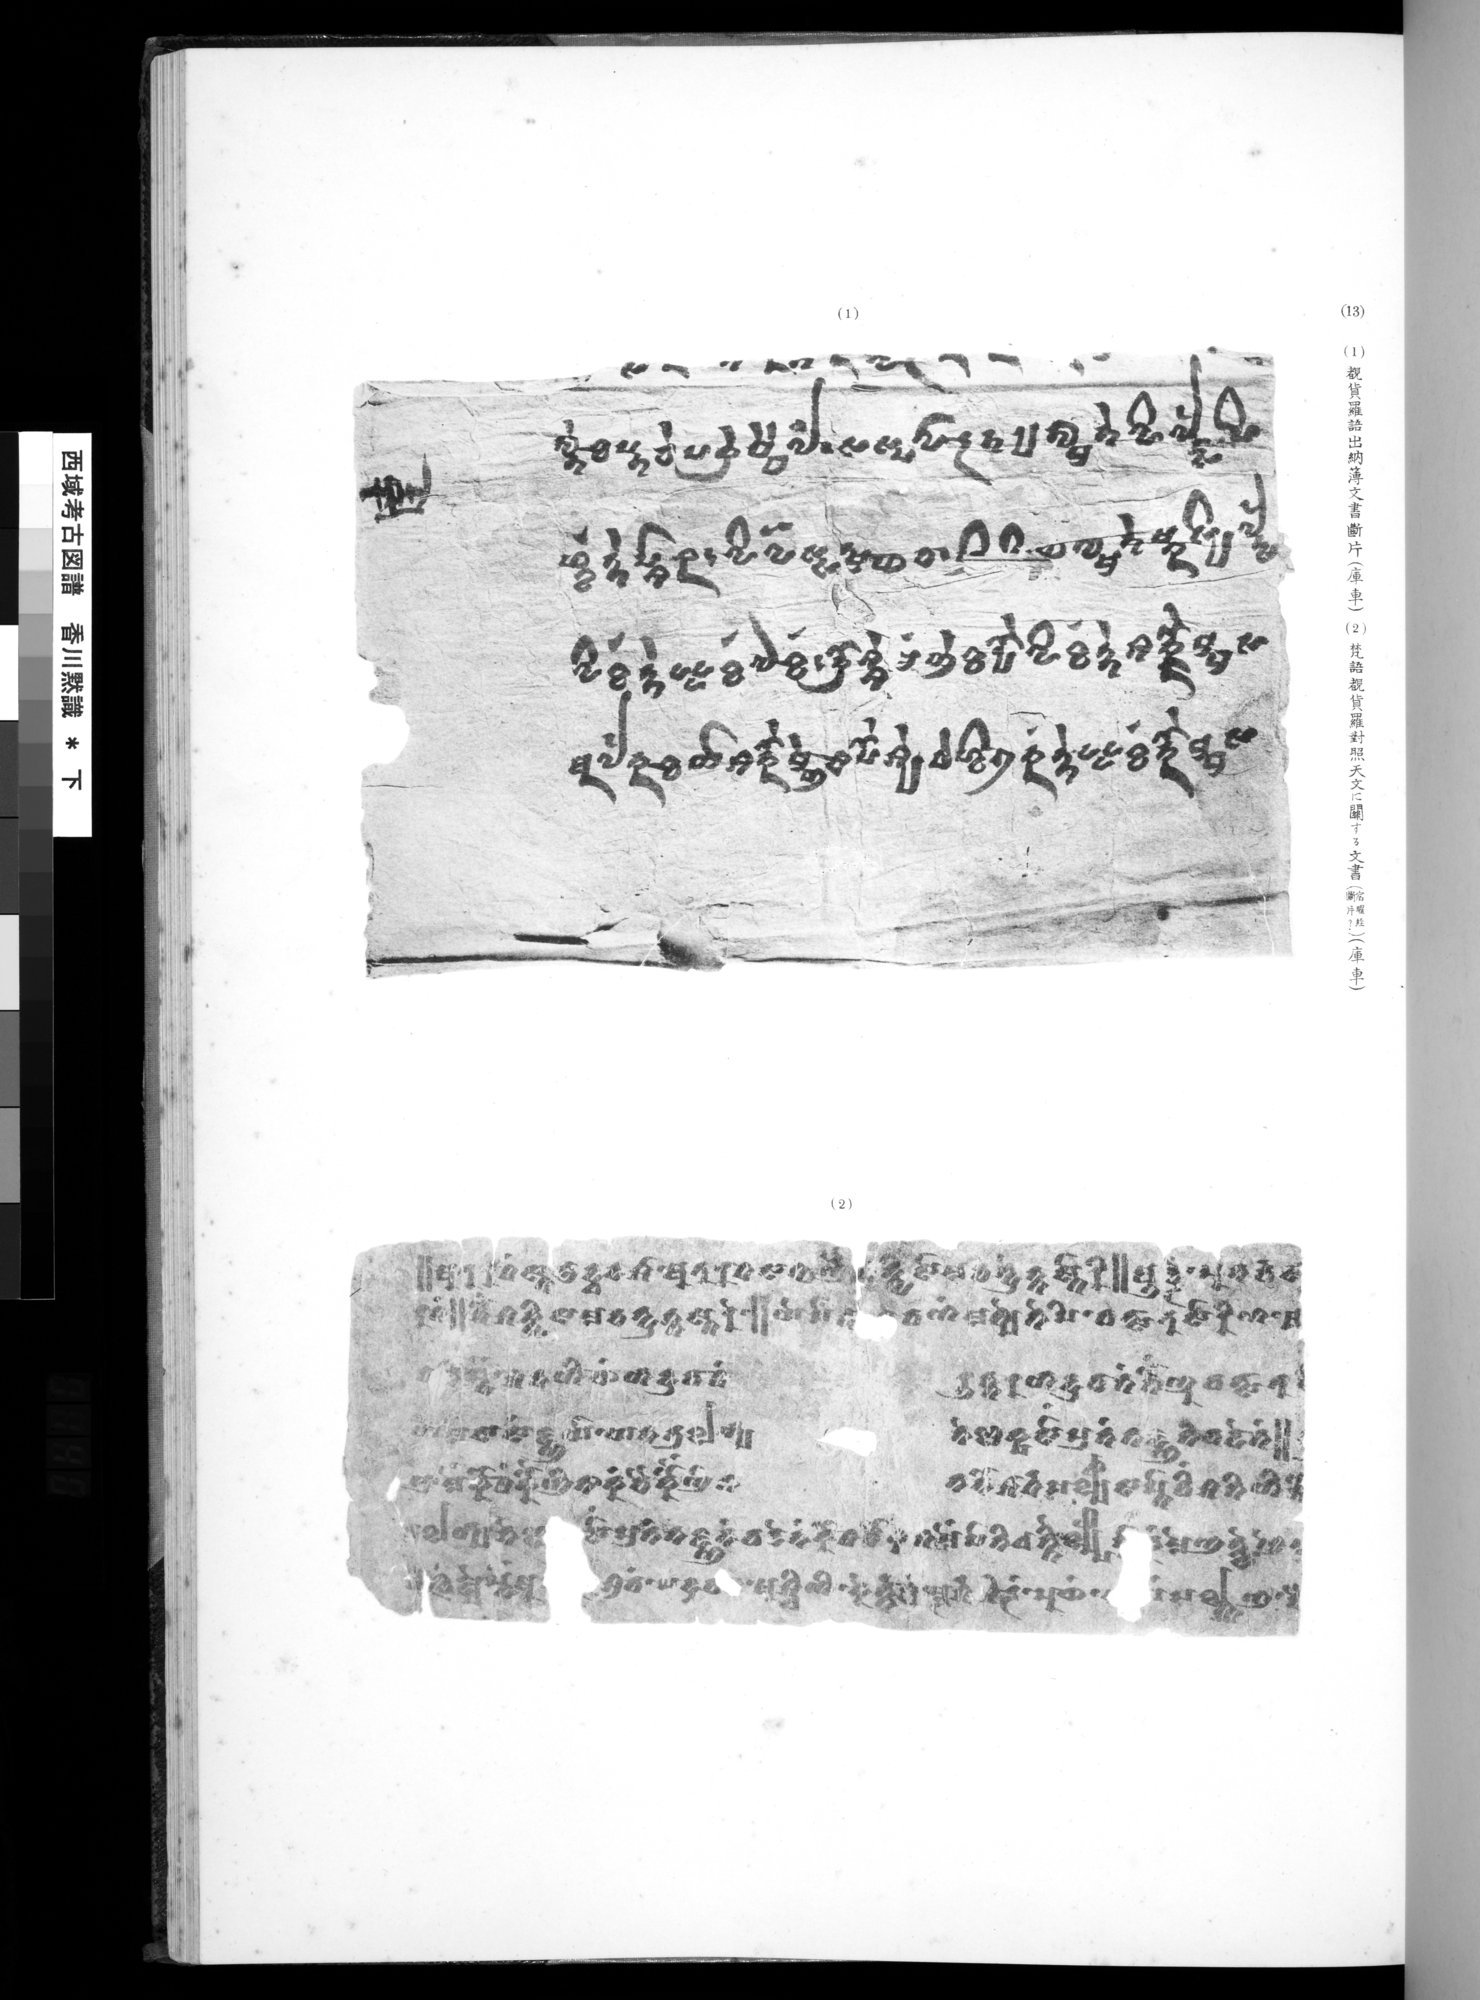 西域考古図譜 : vol.2 / 279 ページ（白黒高解像度画像）